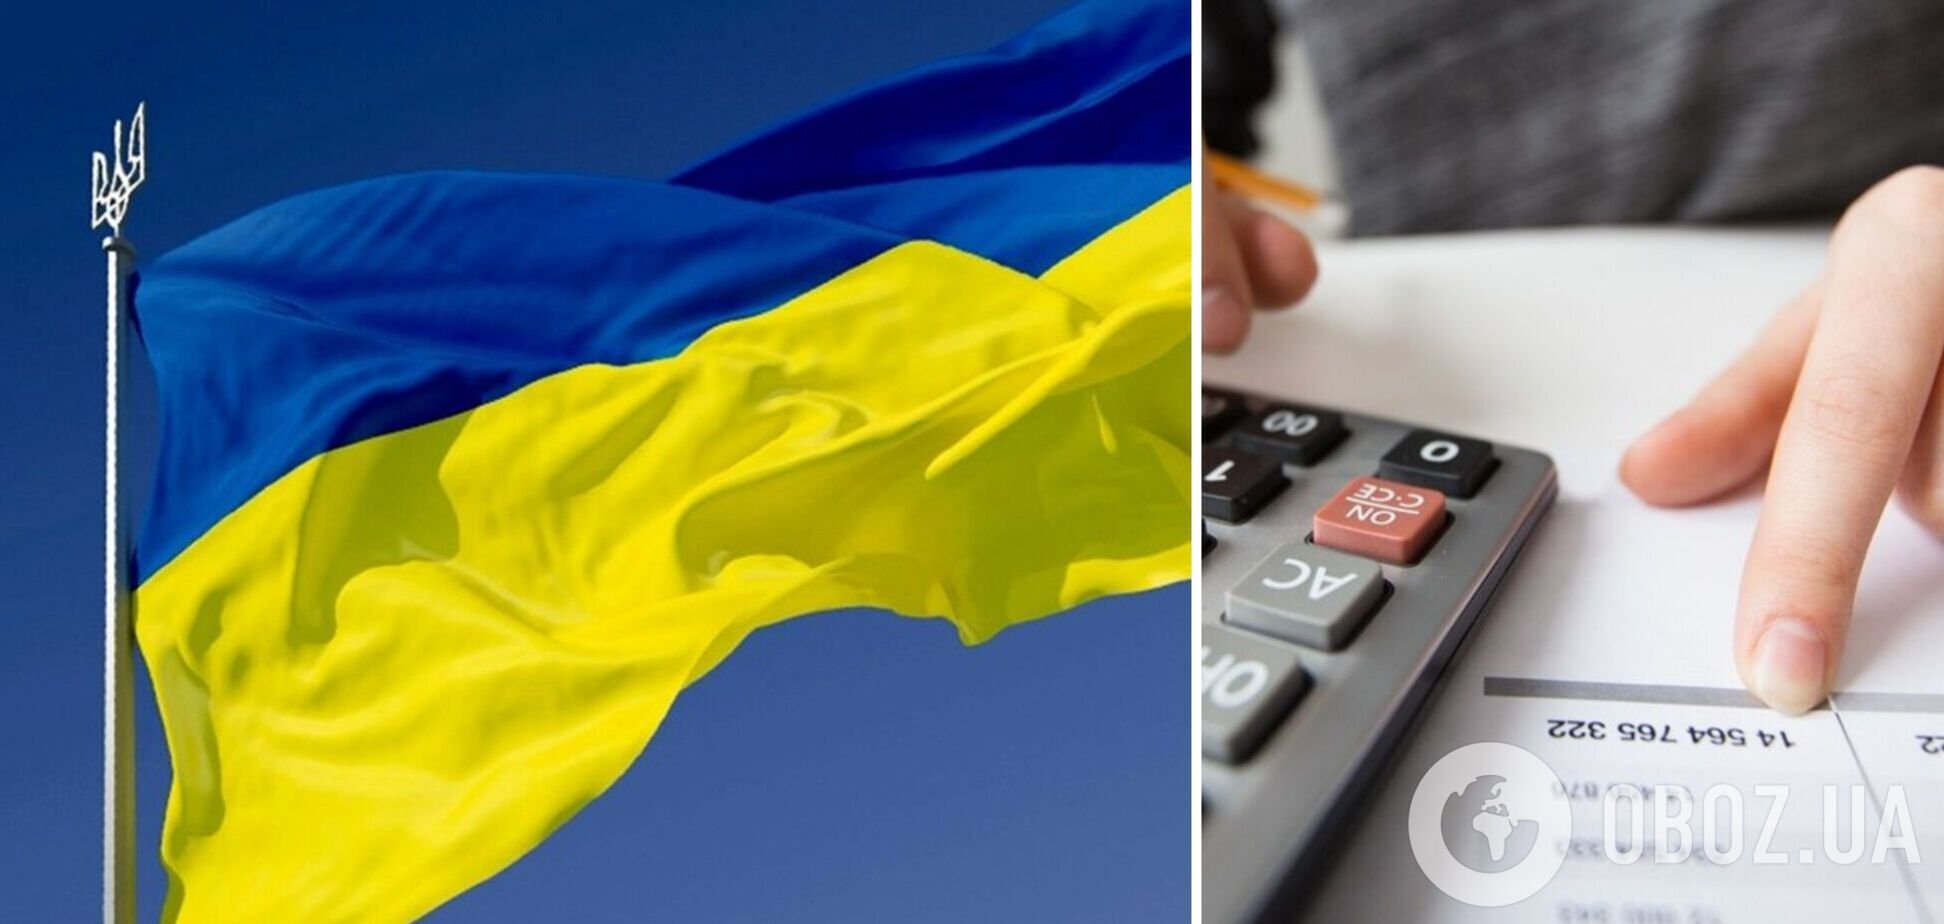 Гетманцев висловив задоволенням припиненням в Україні розмов про відміну податків